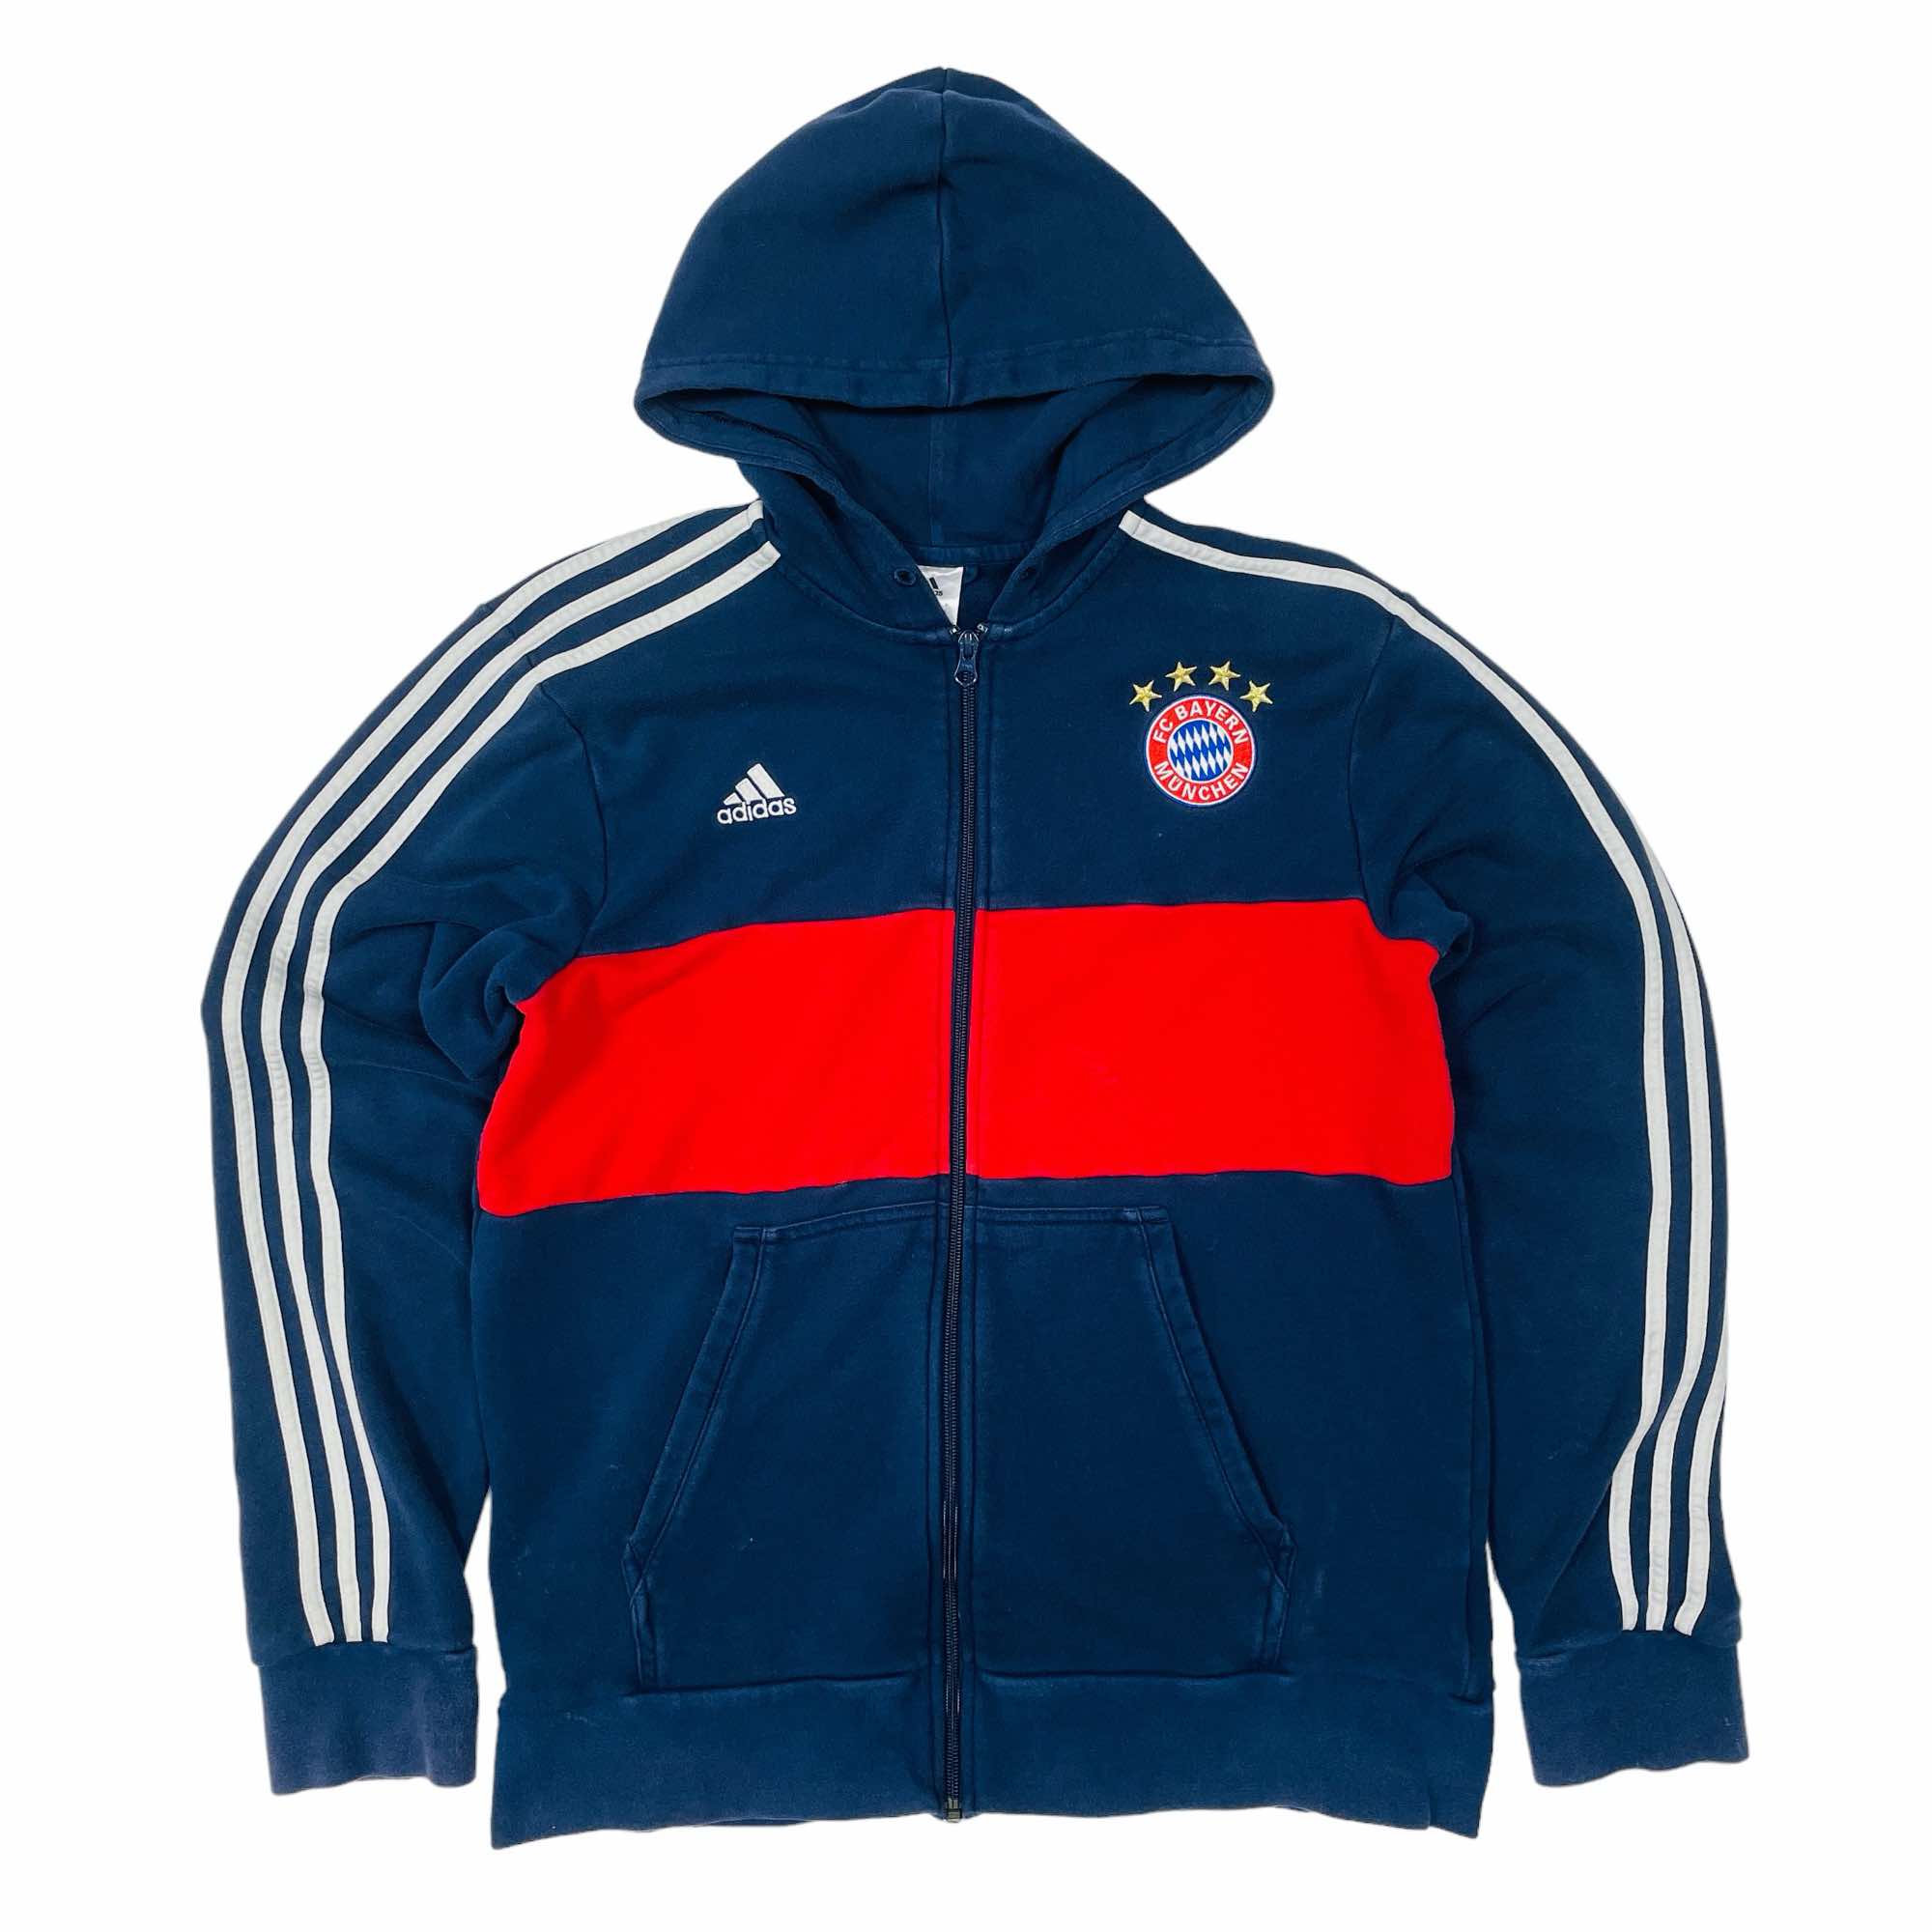 Bayern Munich 2017/18 Adidas Zip Hoodie - Large